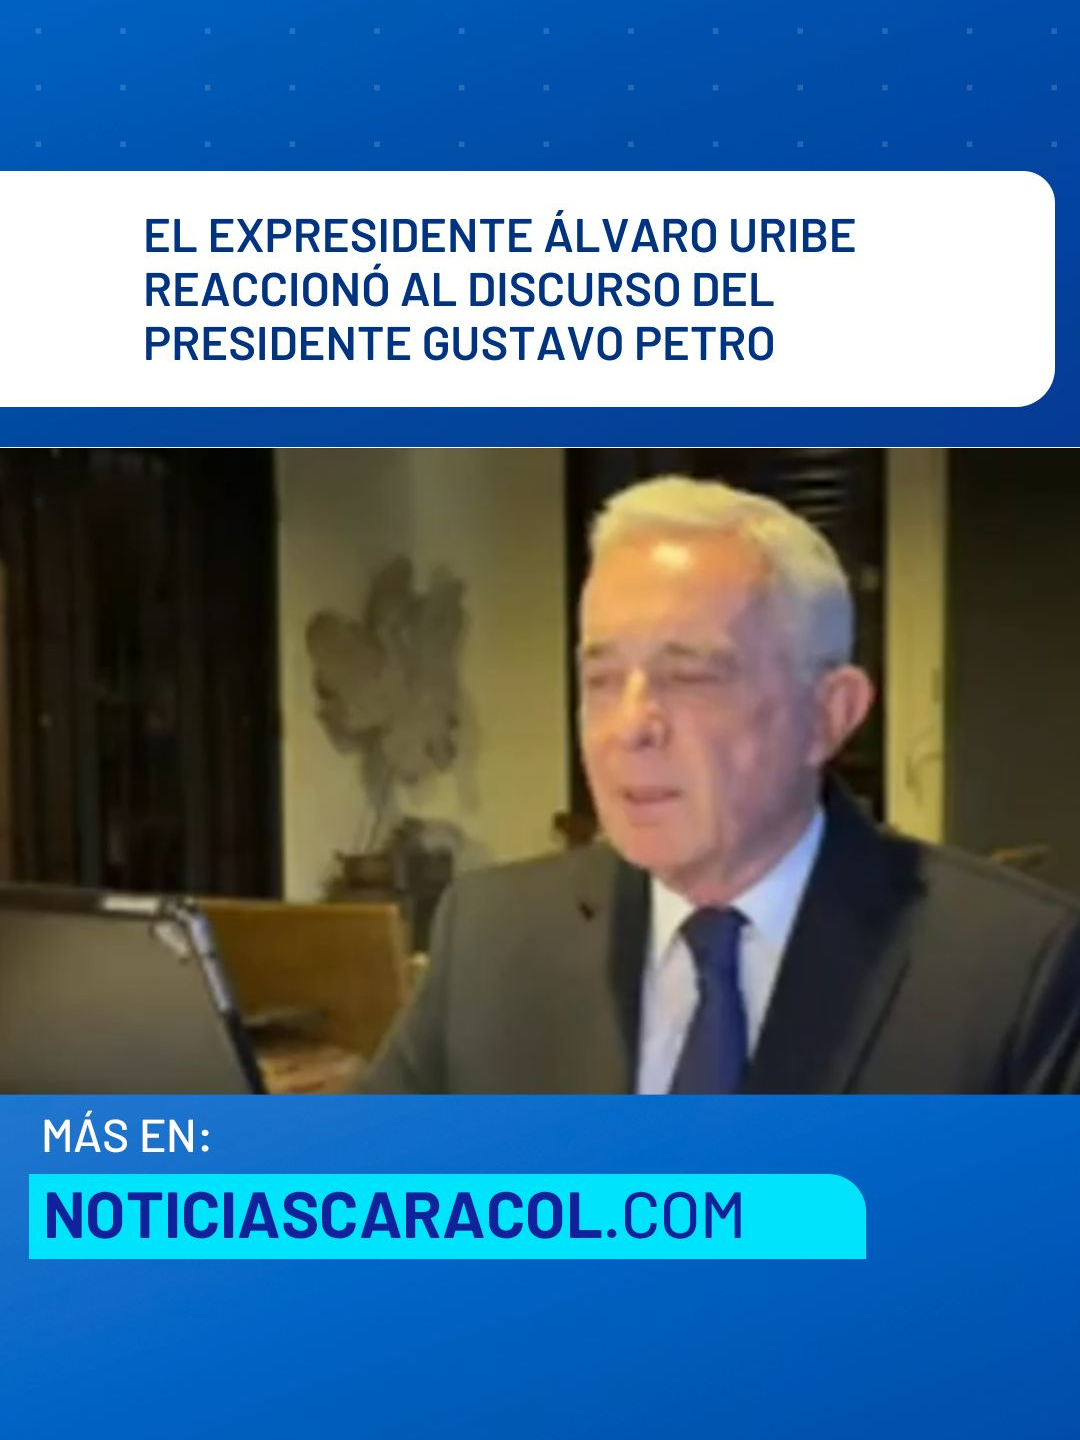 El expresidente Álvaro Uribe Vélez se refirió a las marchas de hoy, 1 de mayo, y reaccionó al discurso del presidente Gustavo Petro: 